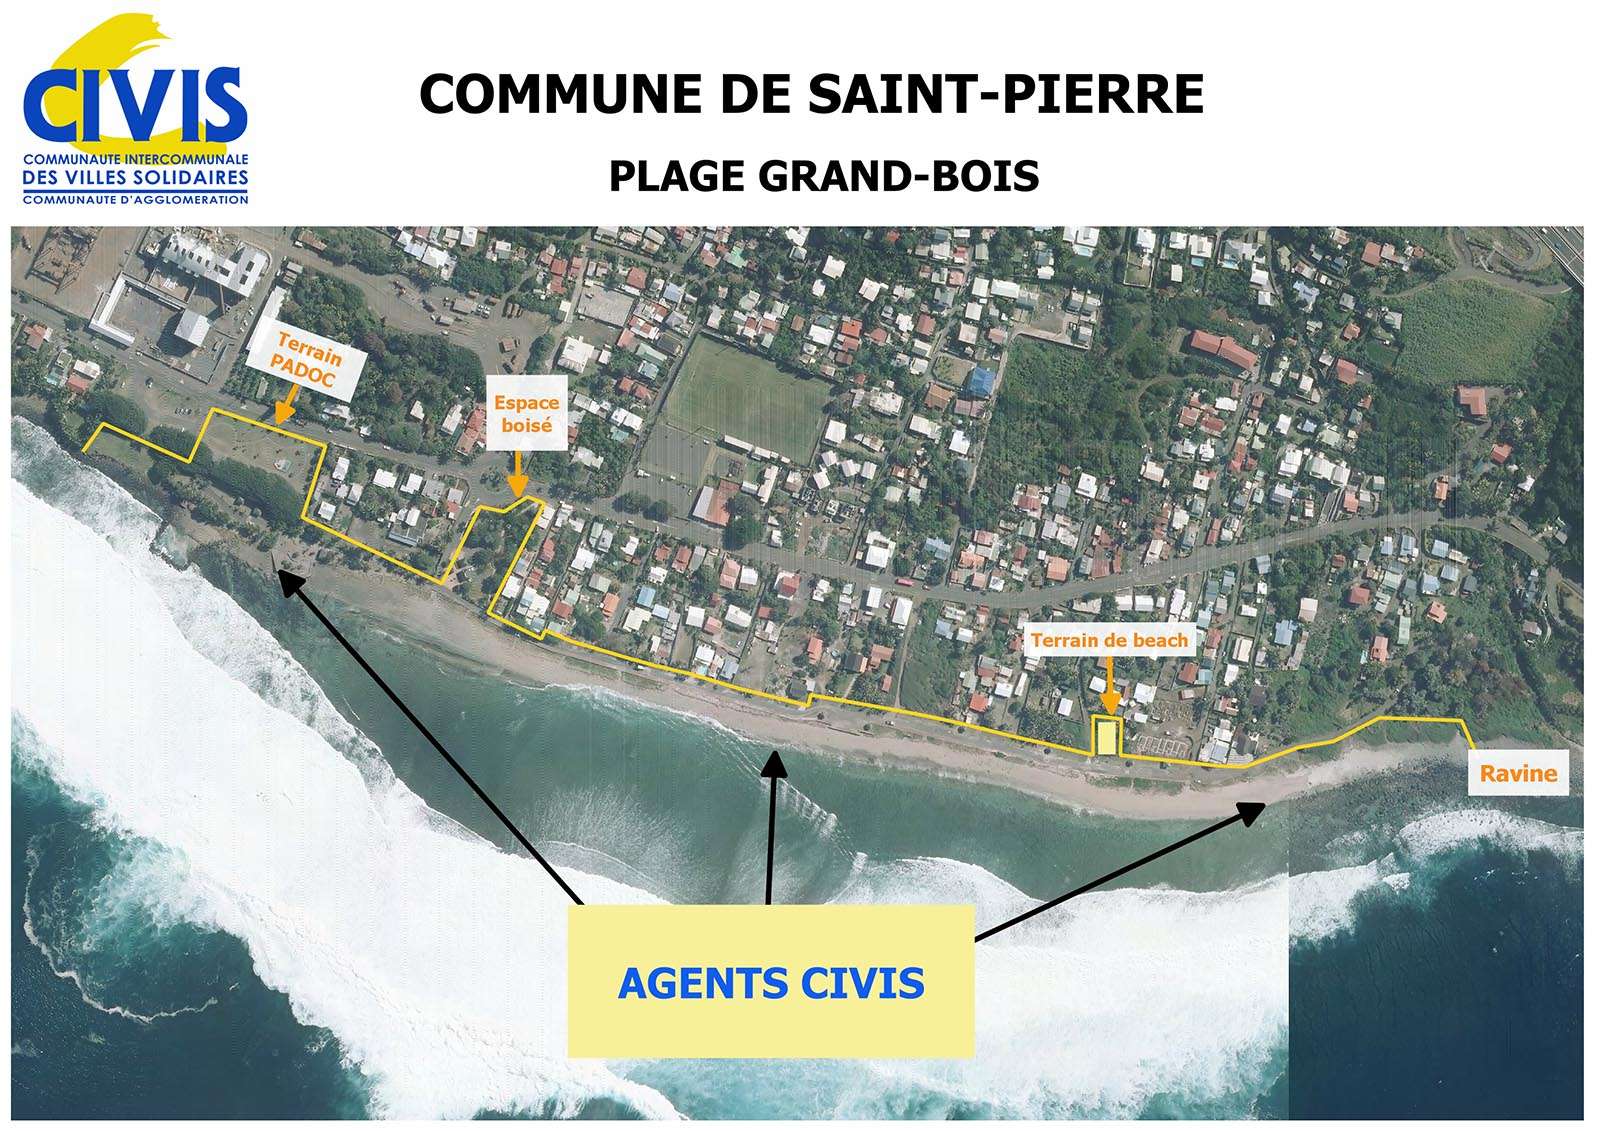 Plage Saint-Pierre Grand-Bois